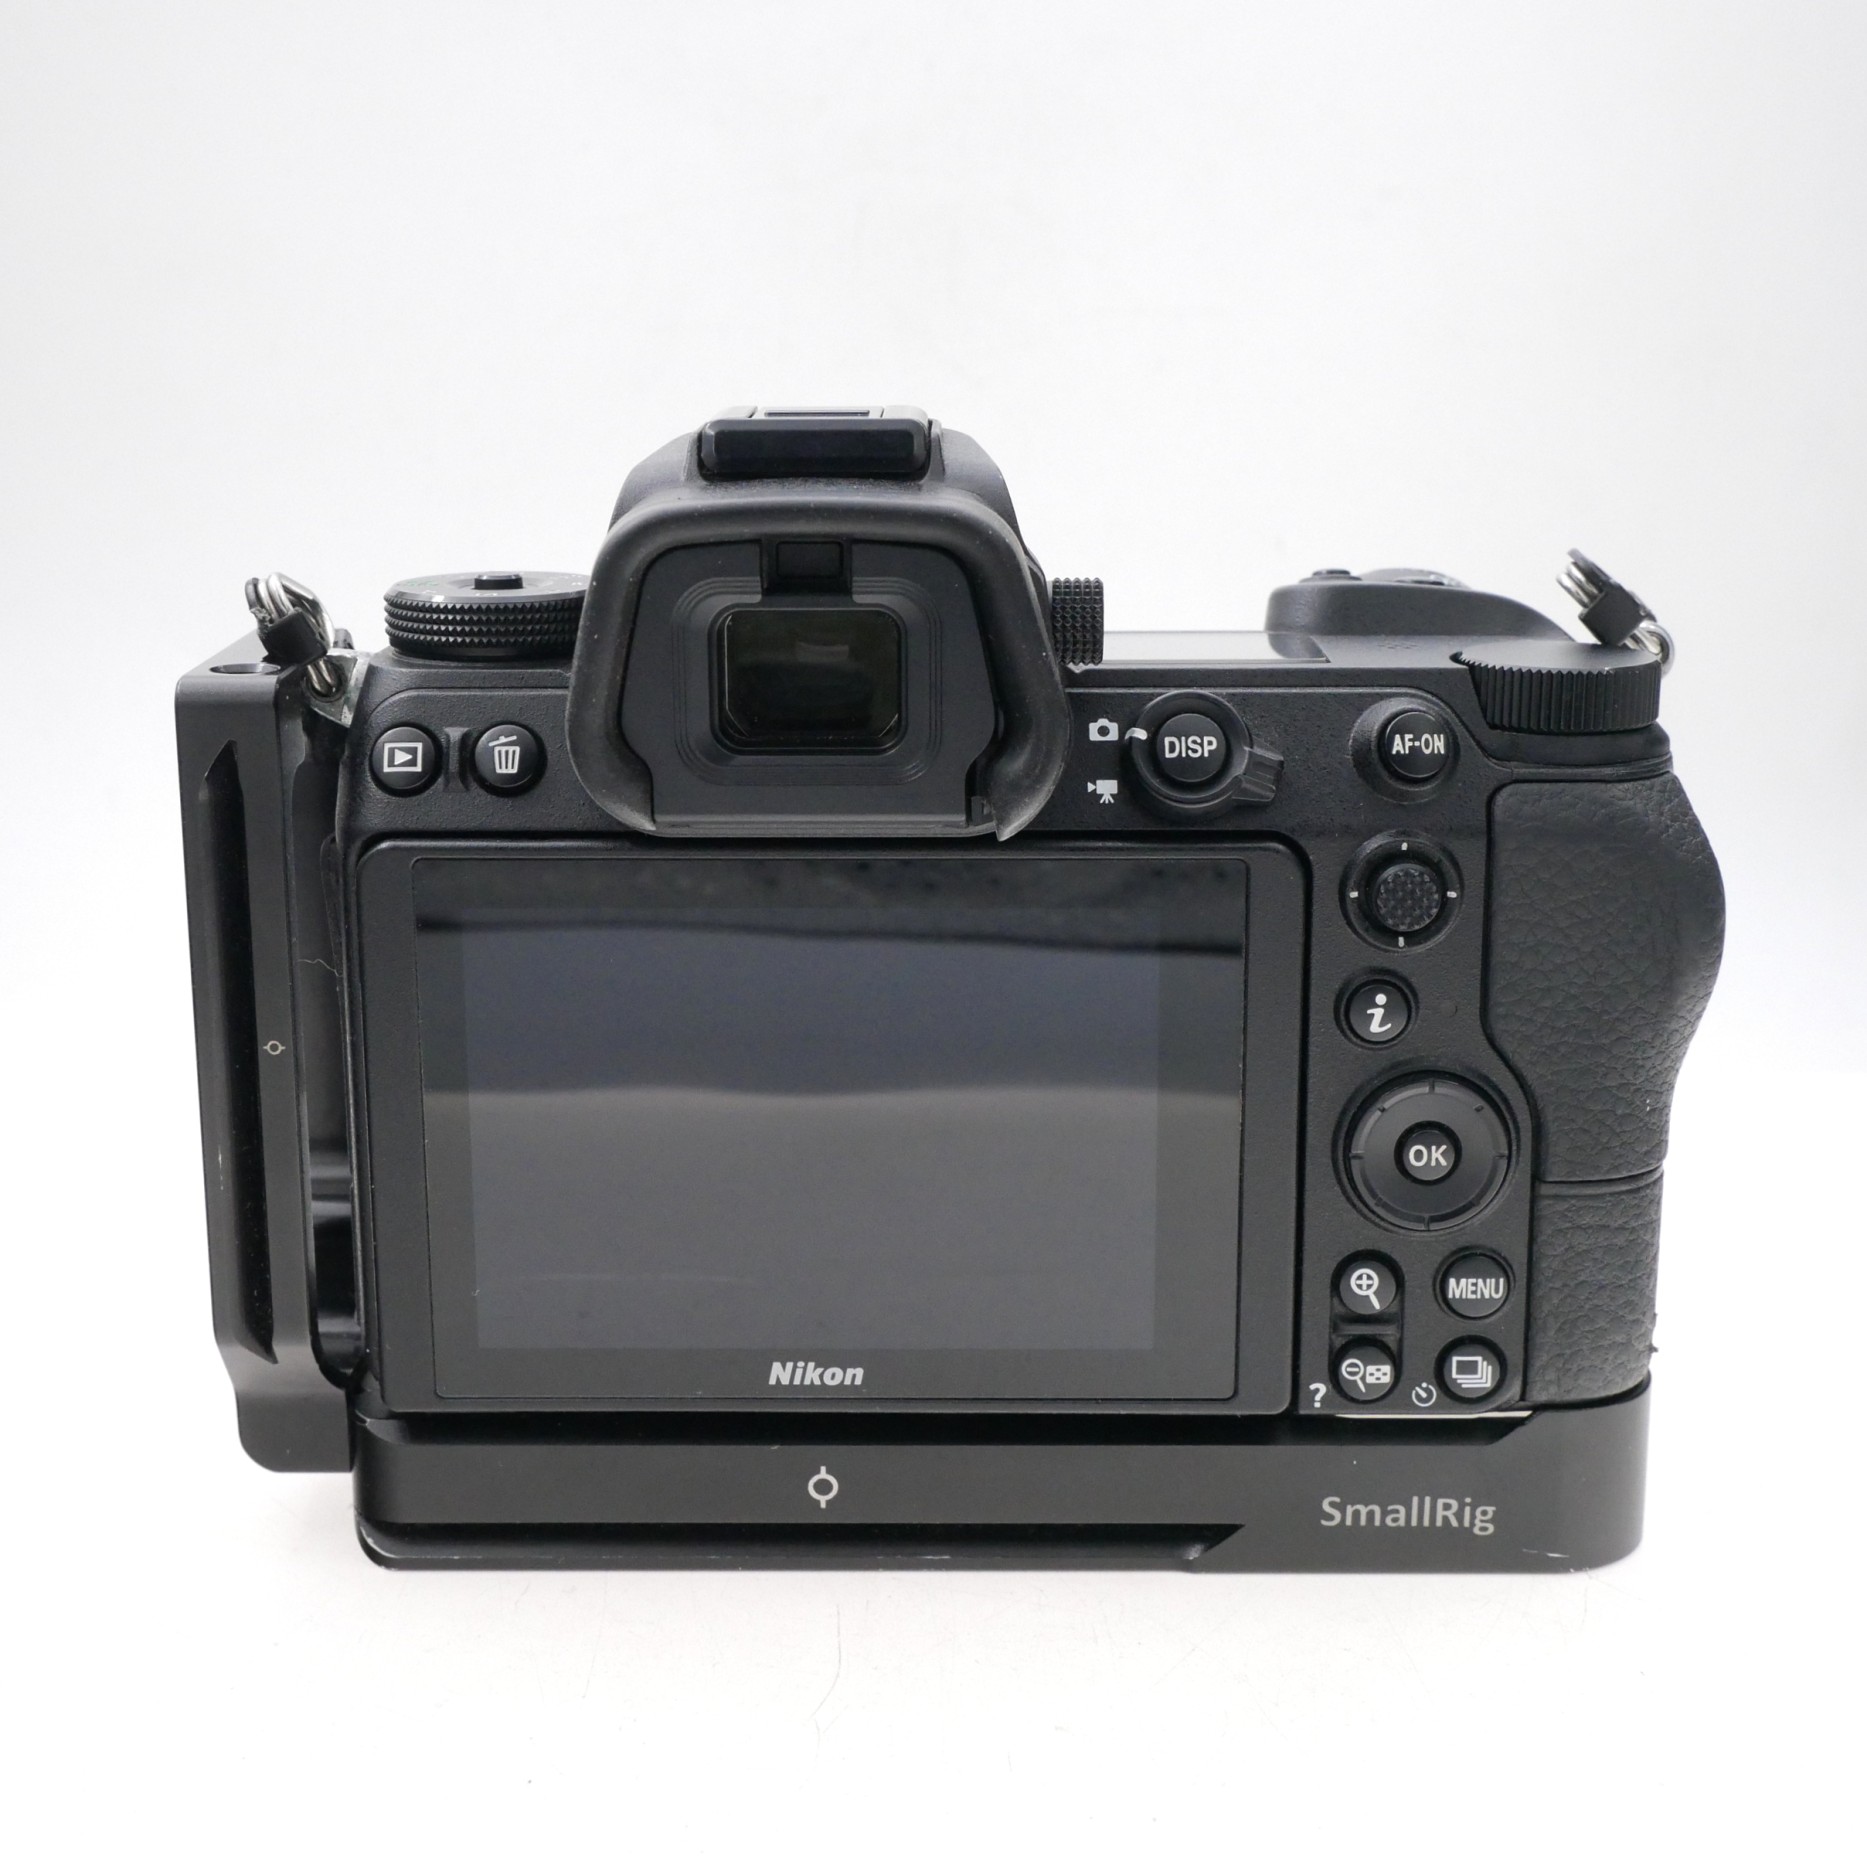 S-H-WXEVU9_2.jpg - Nikon Z7 Body Only 36,105 Frames